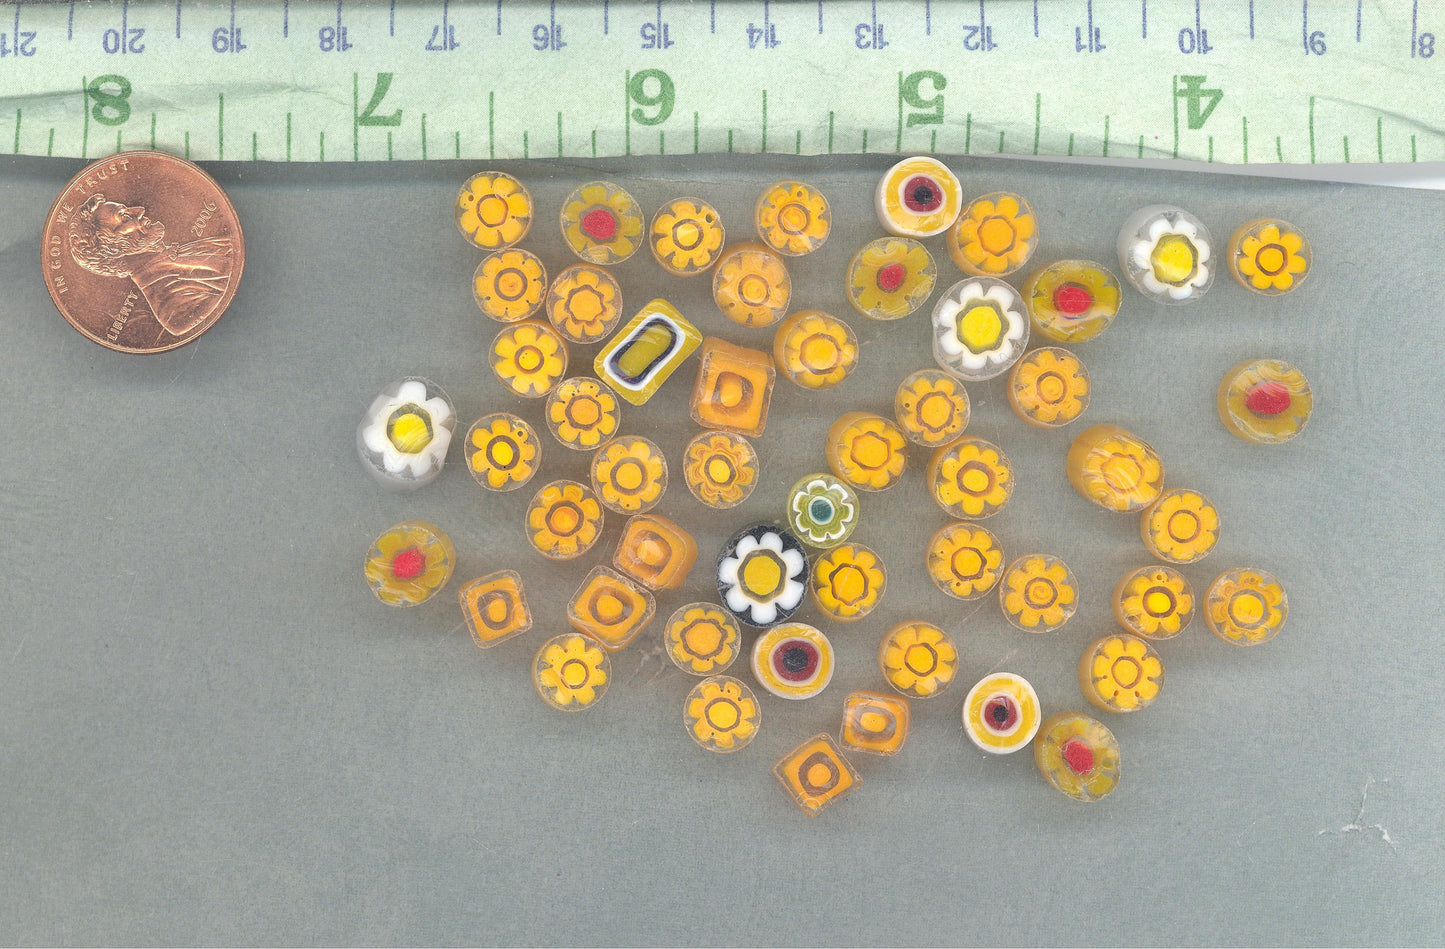 Saffron Orange Millefiori - 25 grams - Unique Mosaic Glass Tiles - Mix of Different Floral Patterns